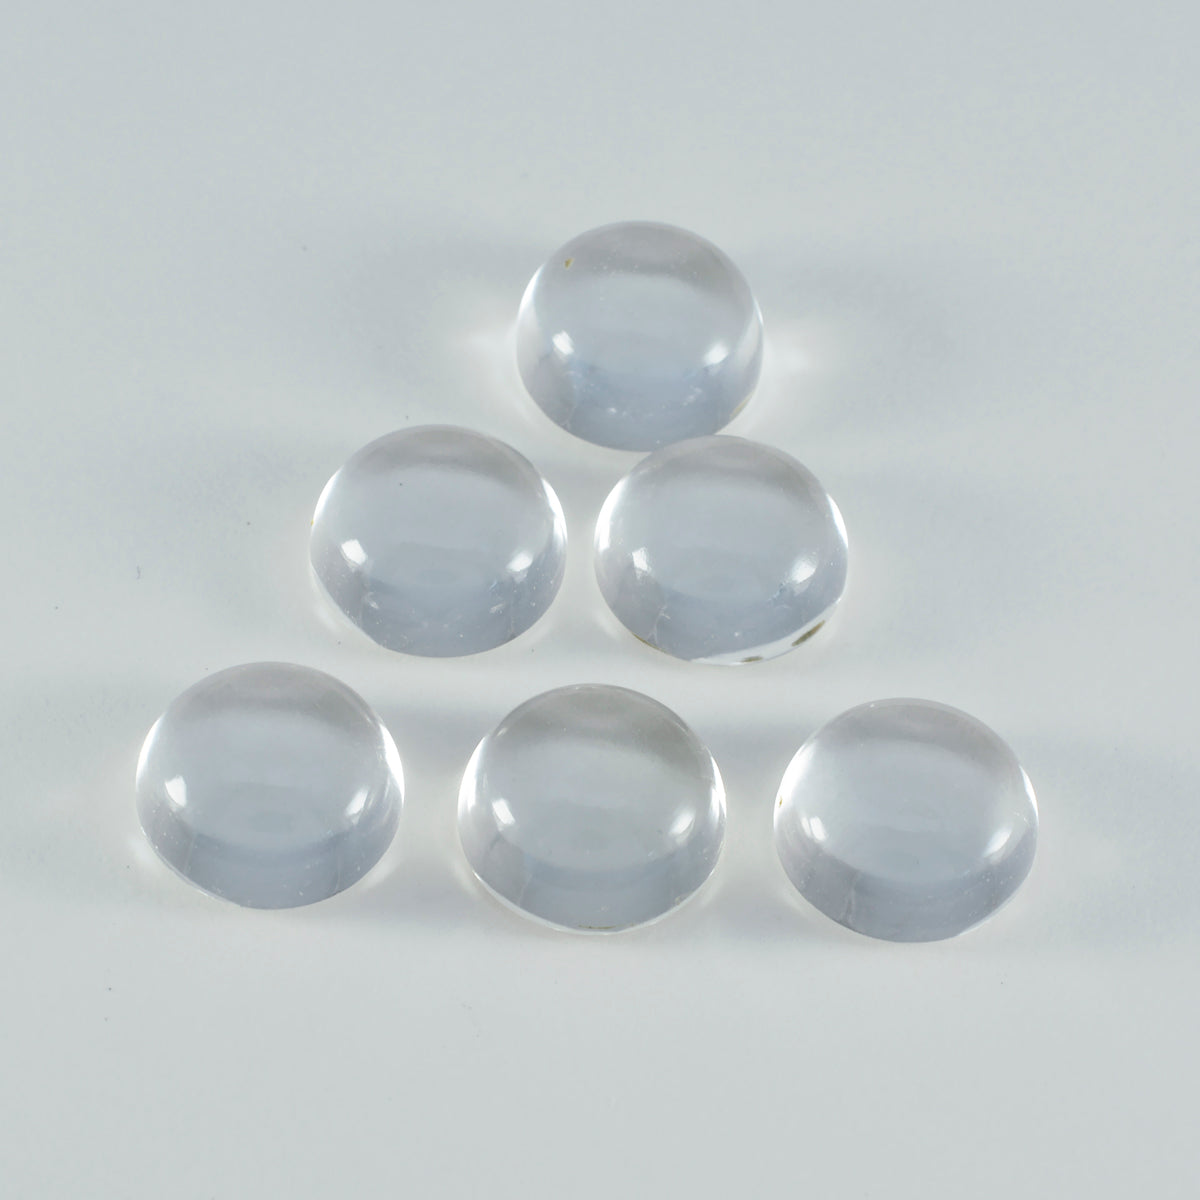 Riyogems – cabochon de quartz en cristal blanc, 8x8mm, forme ronde, pierres précieuses de qualité a1, 1 pièce